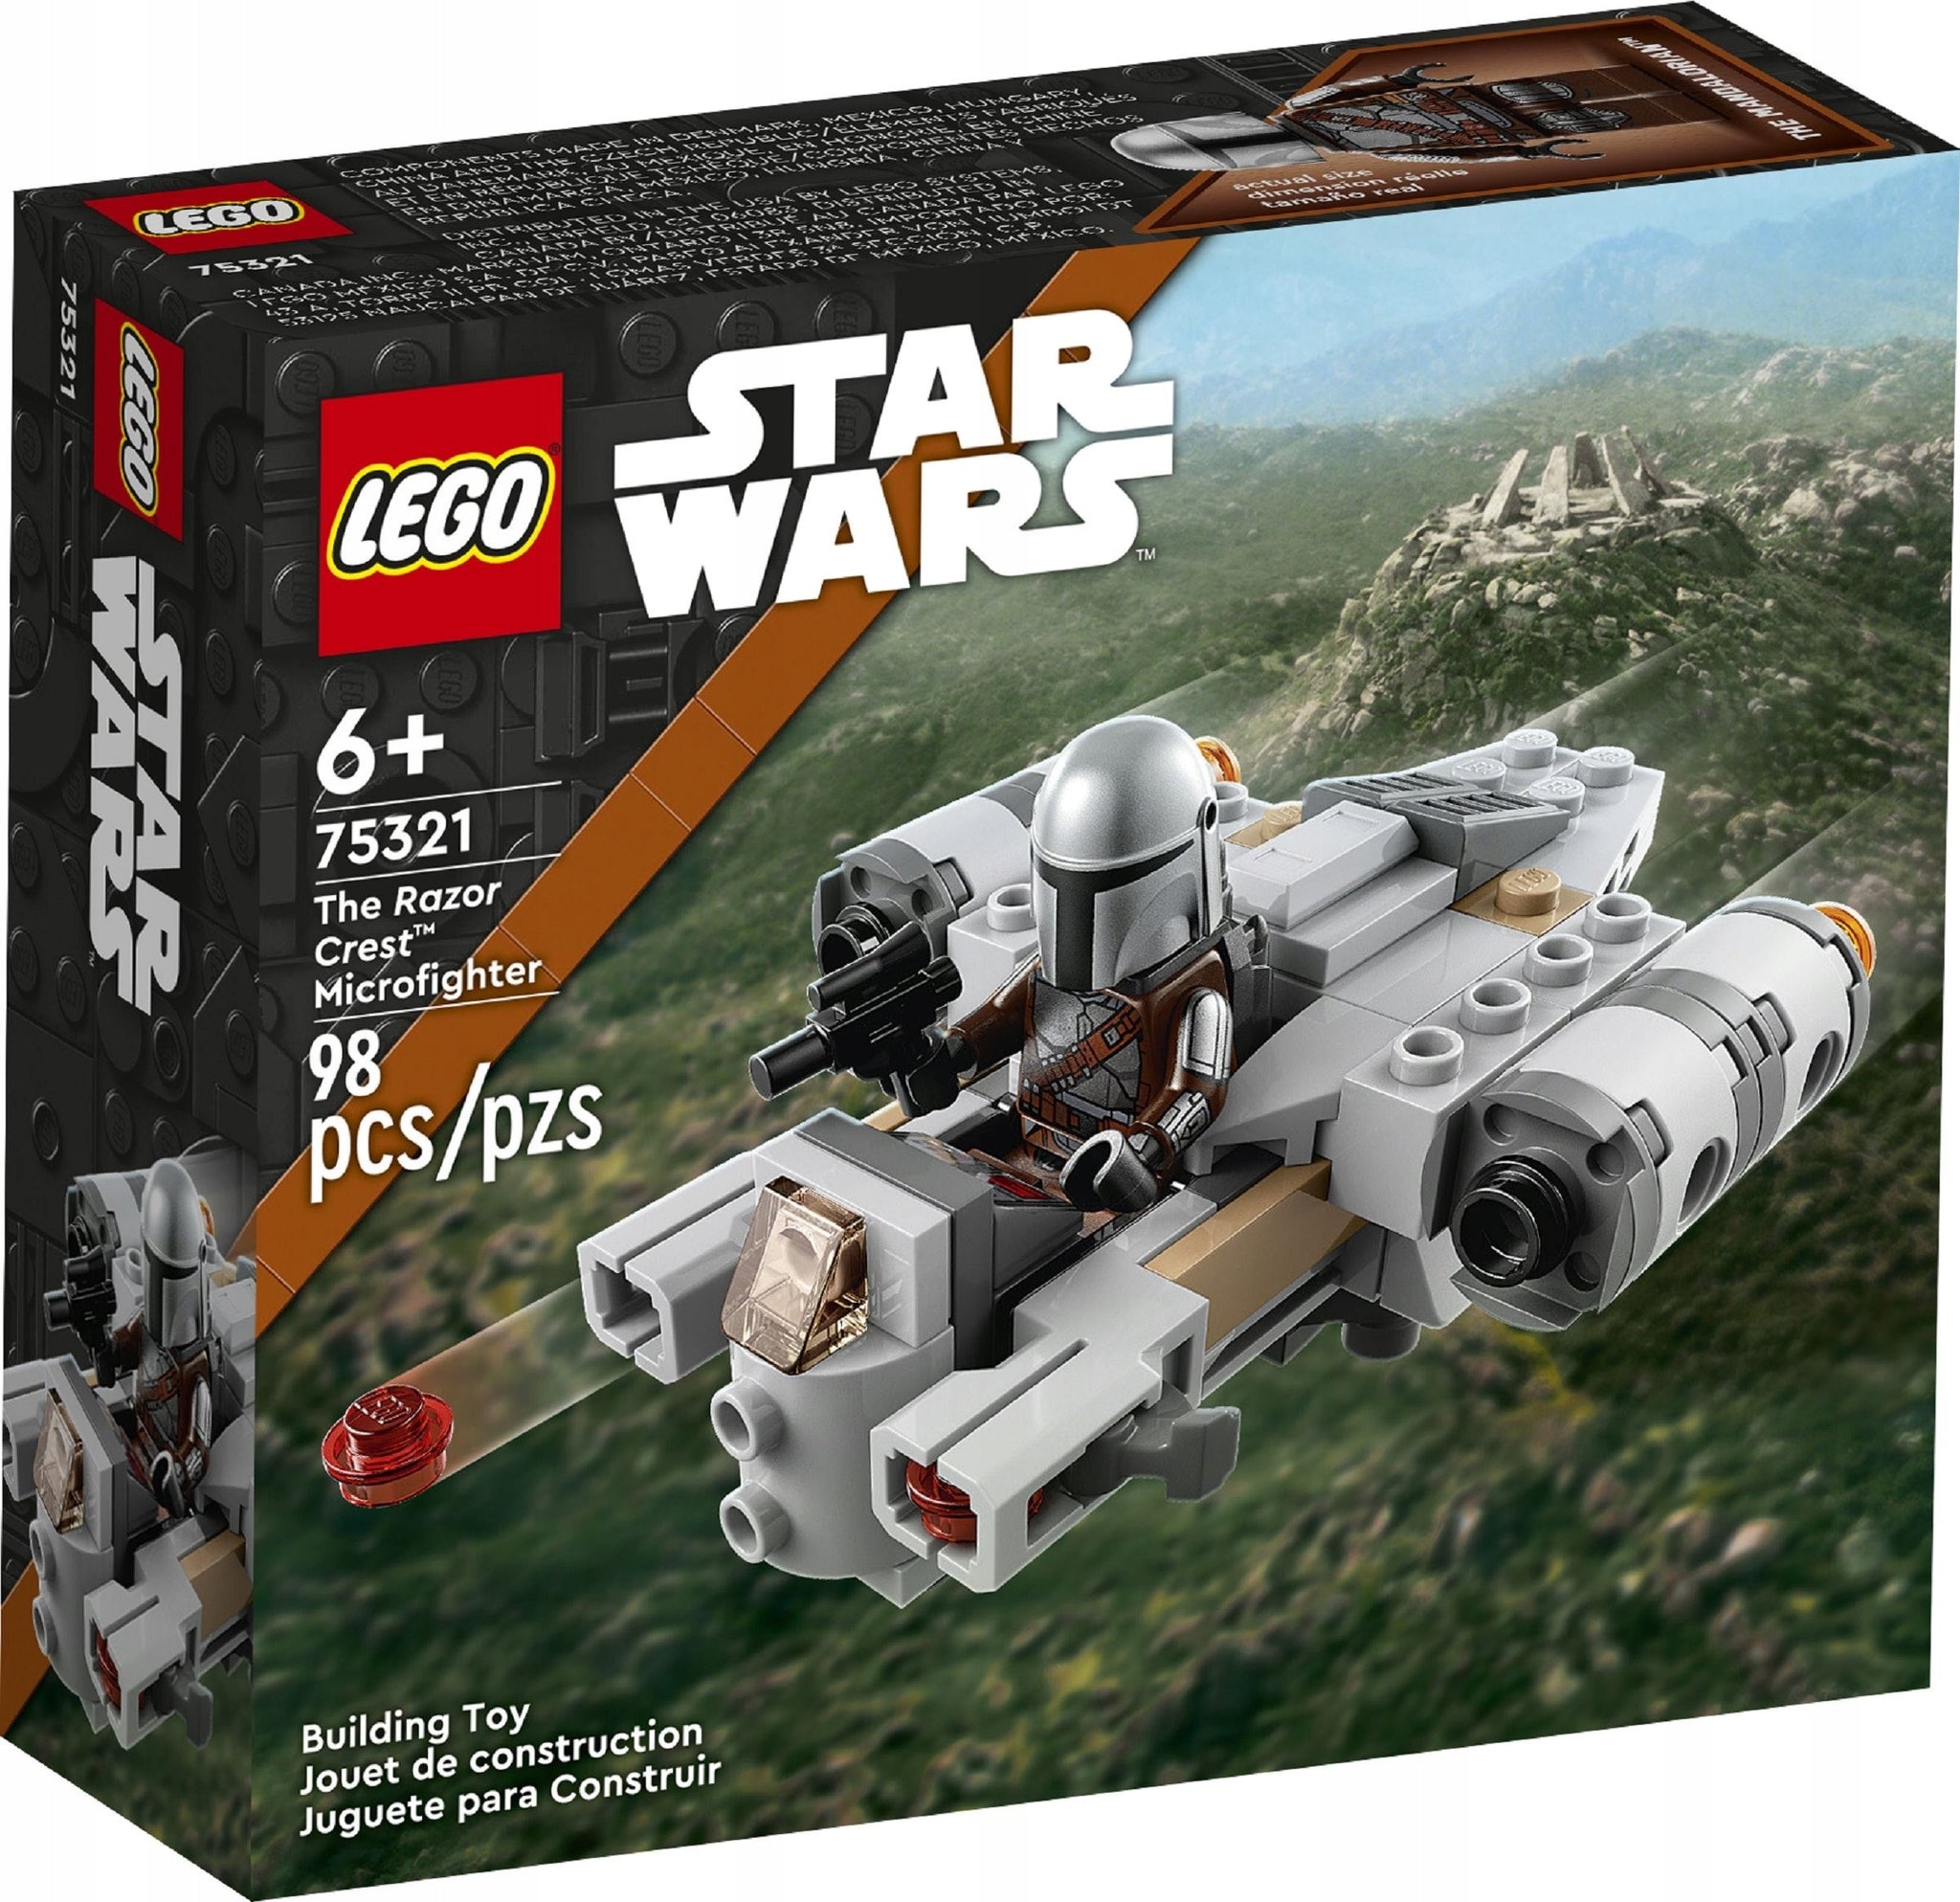 LEGO Star Wars 6+